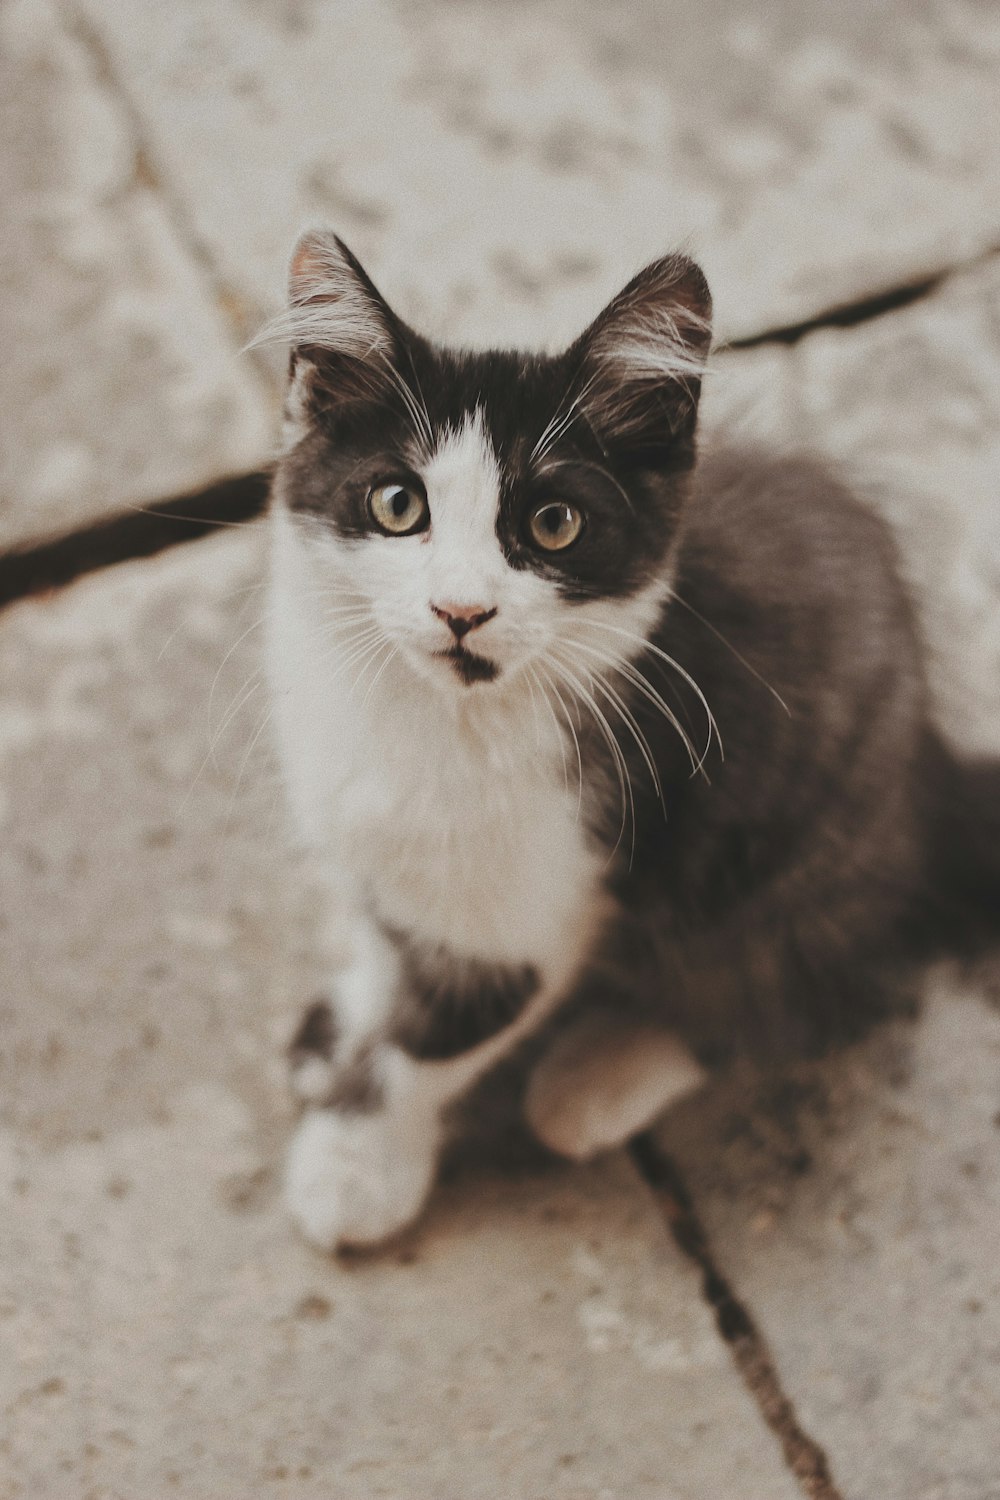 회색 콘크리트 포장 도로에 앉아있는 고양이